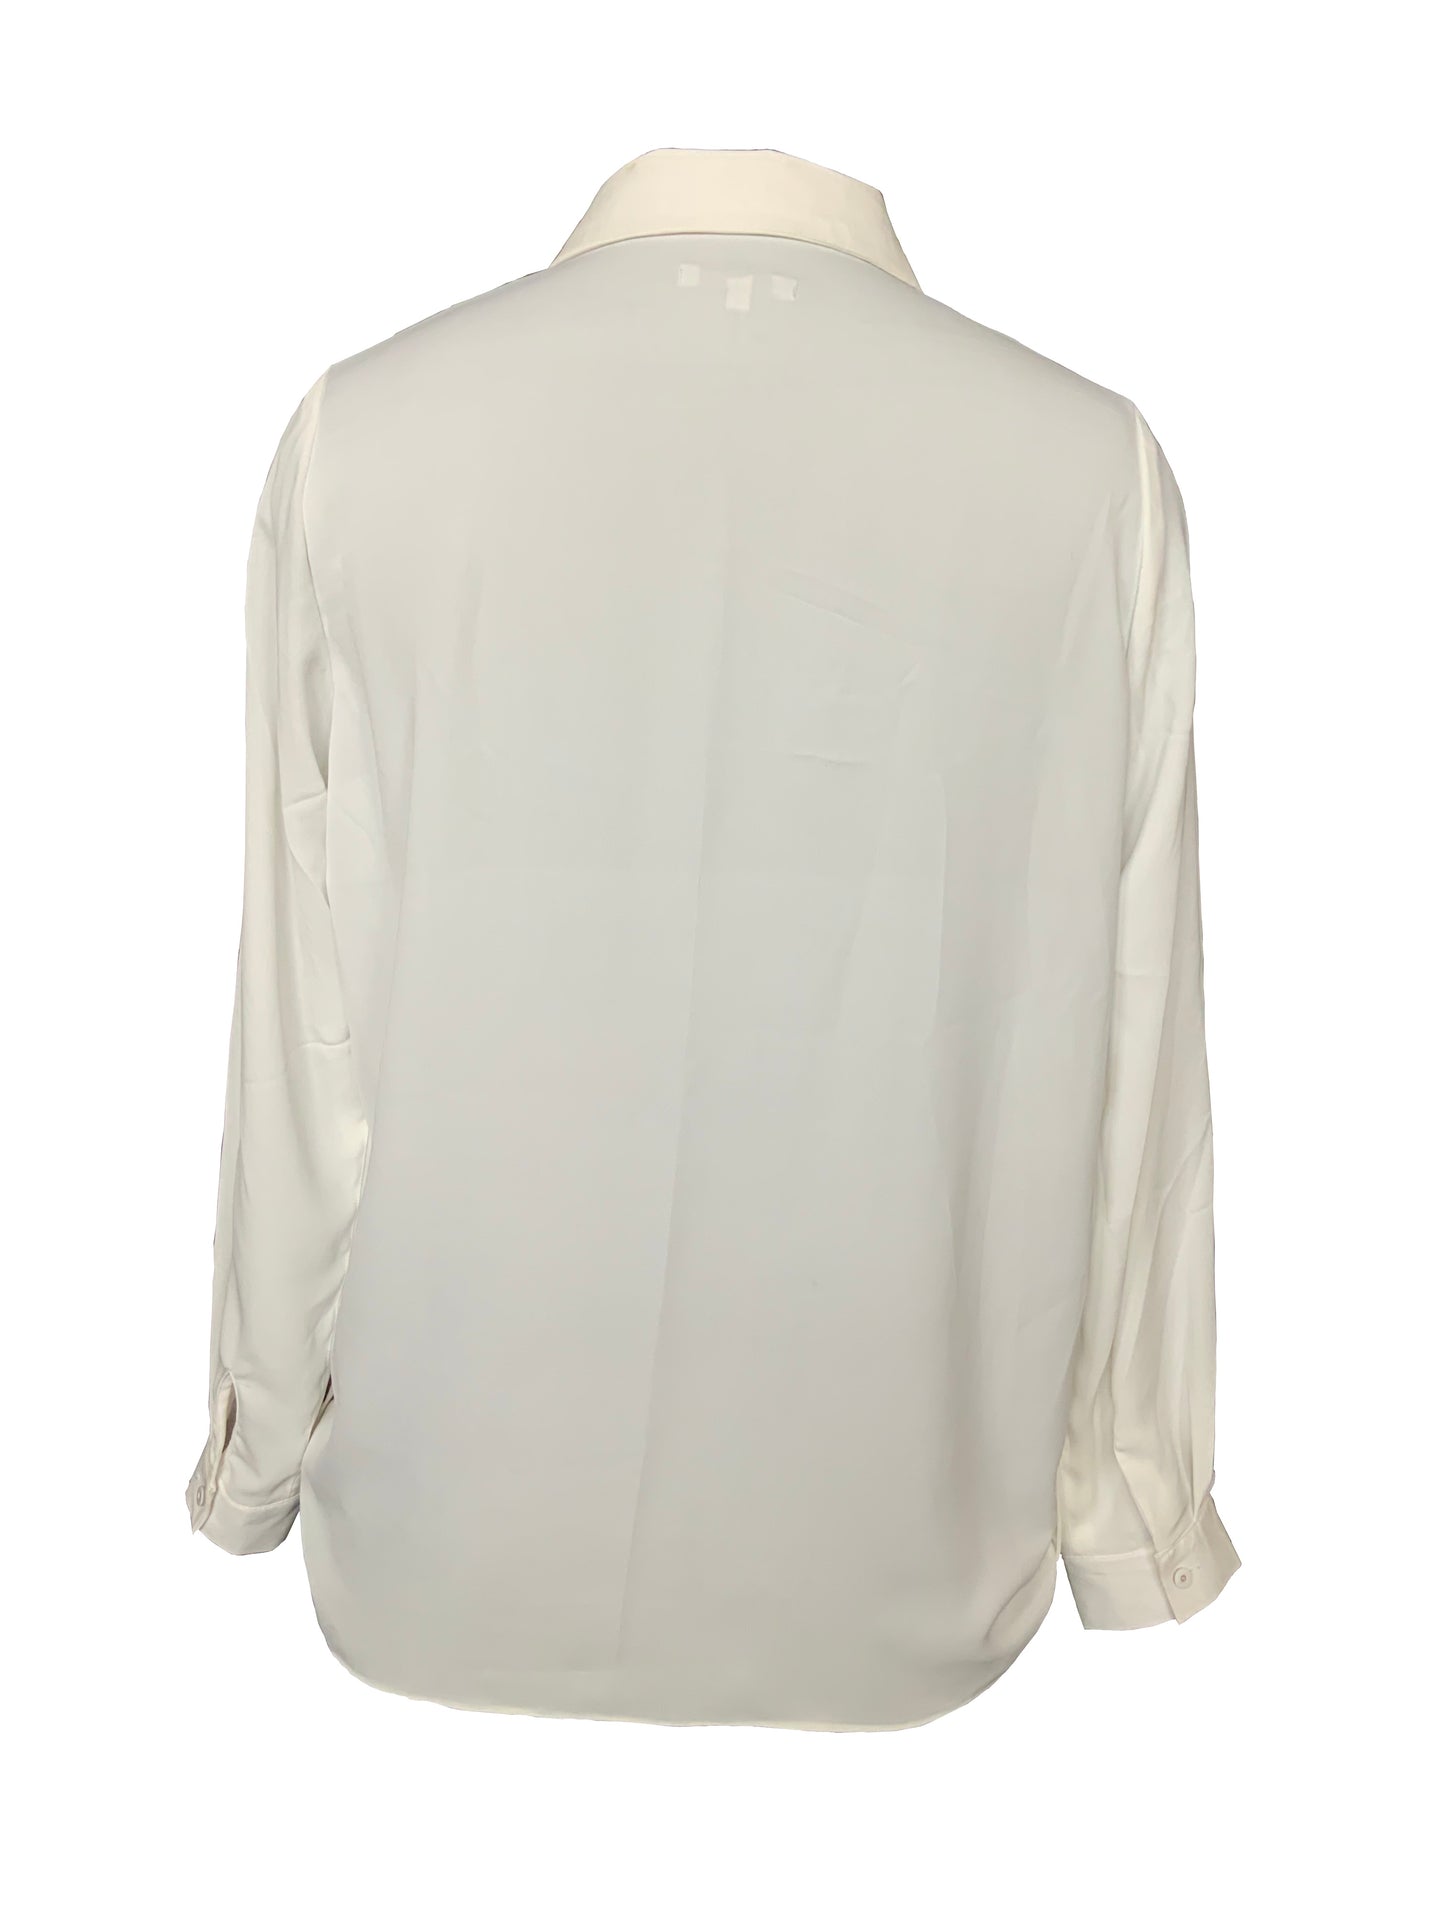 Sequin pocket shirt white